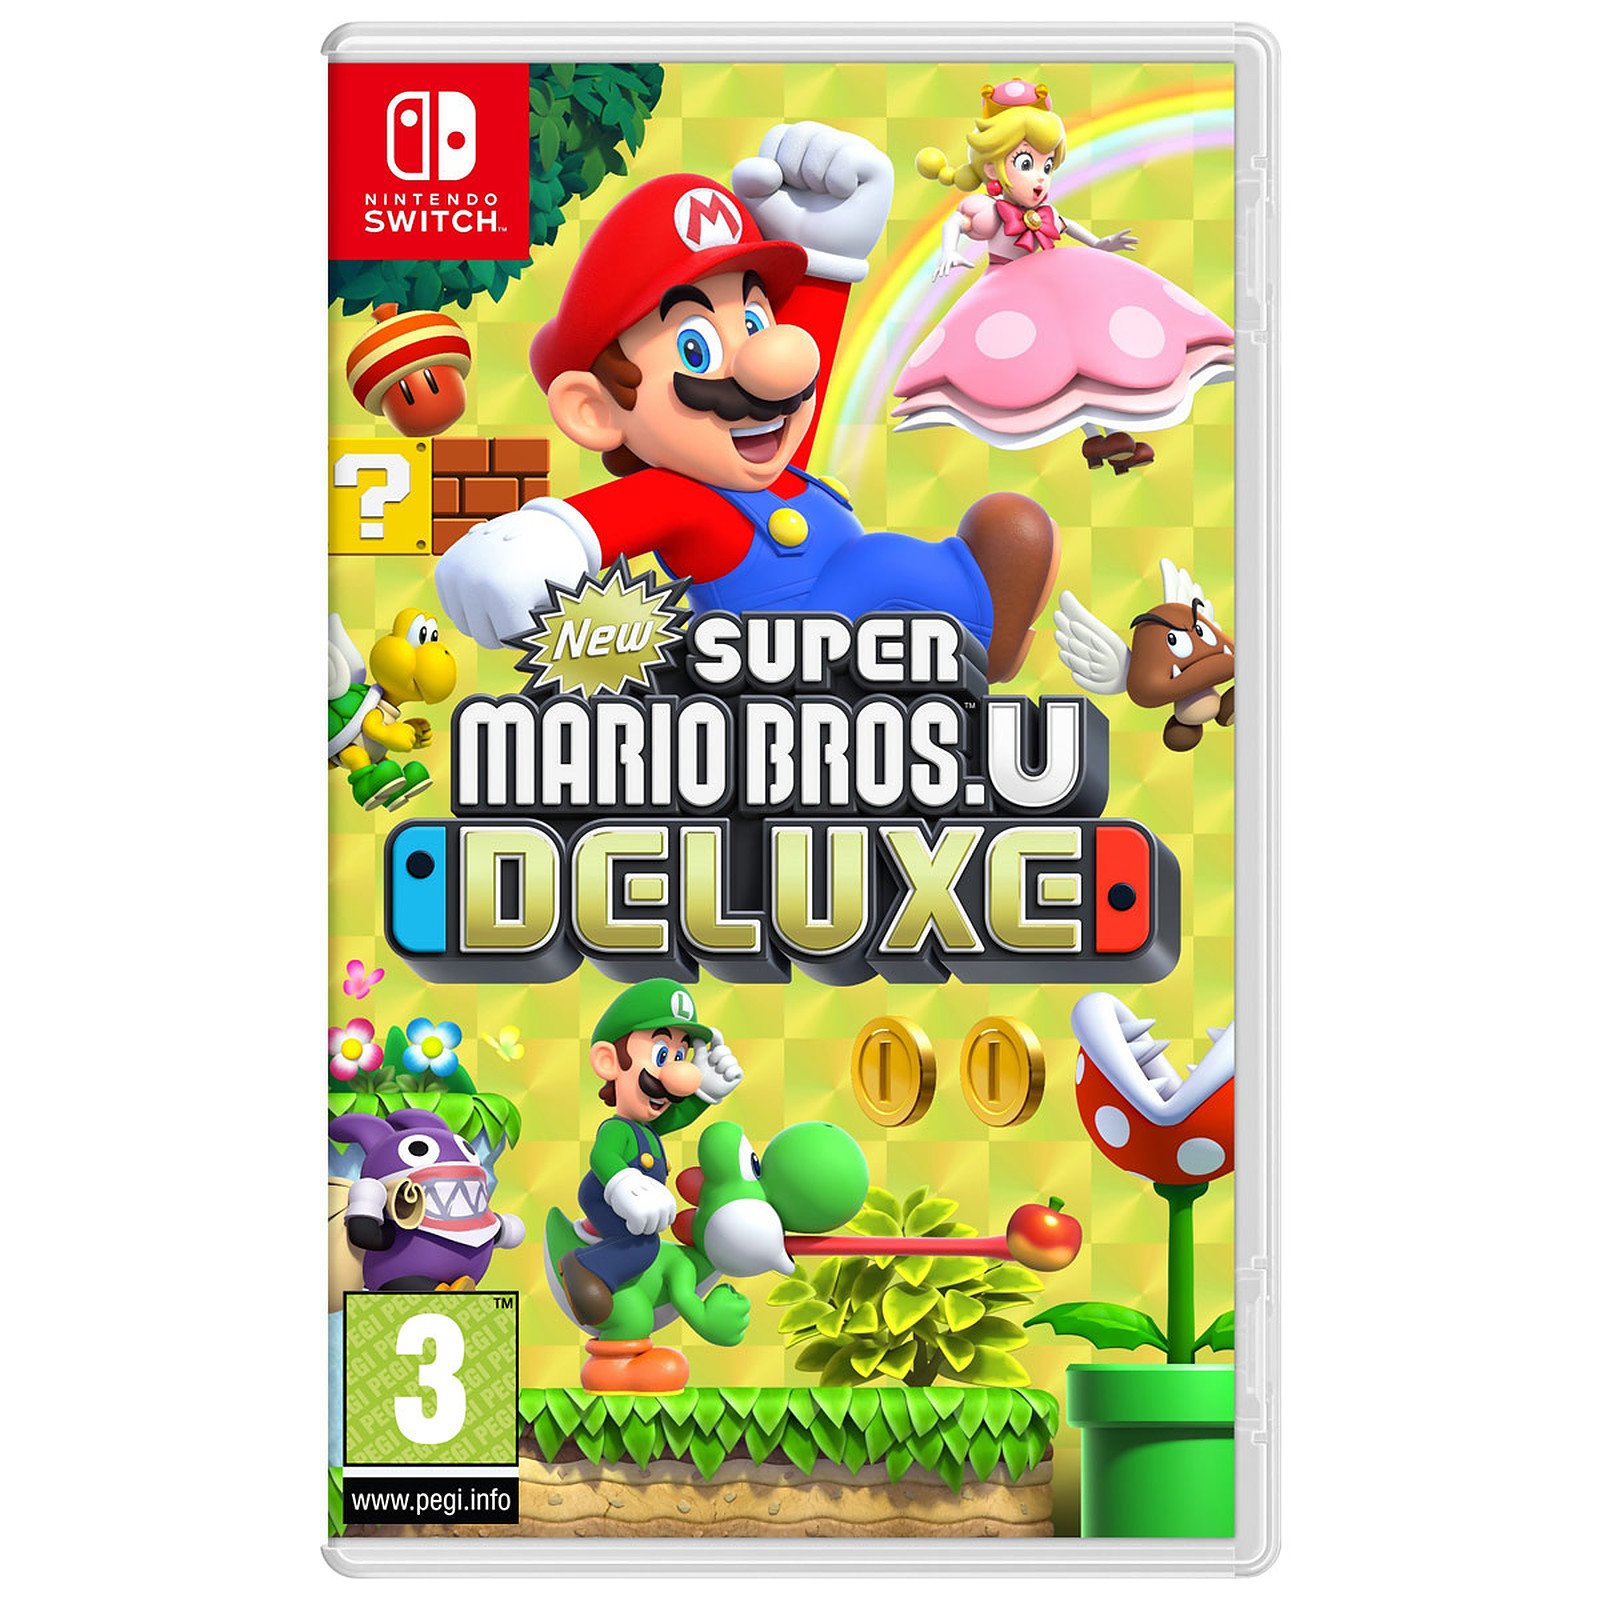 New Super Mario Bros. U Deluxe (UK, SE, DK, FI) - Videospill og konsoller